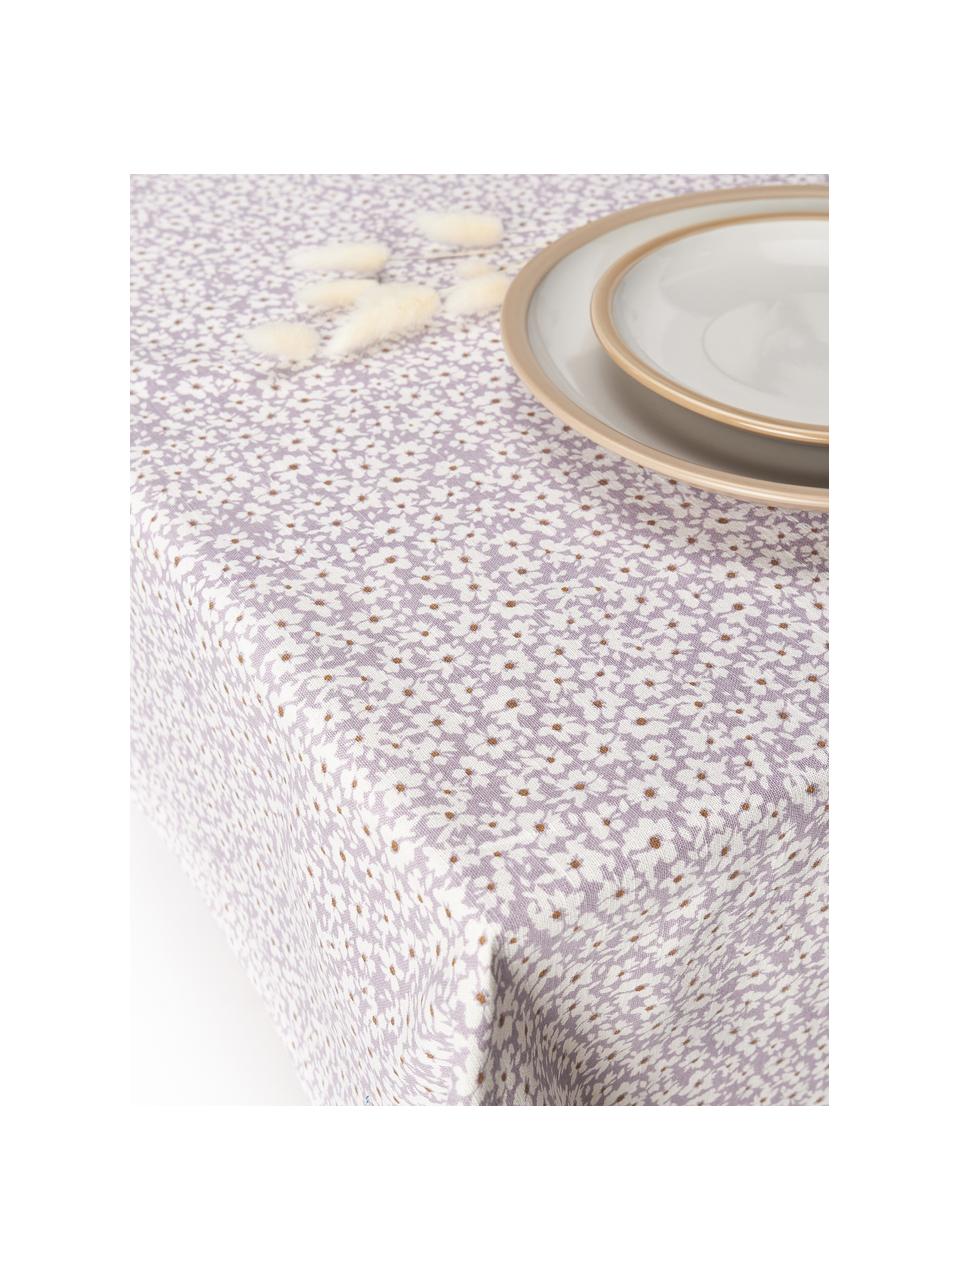 Tafelkleed Liberte met bloemmotief, 100% katoen, Lavendel, gebroken wit, 6-8 personen (B 140 x L 220 cm)